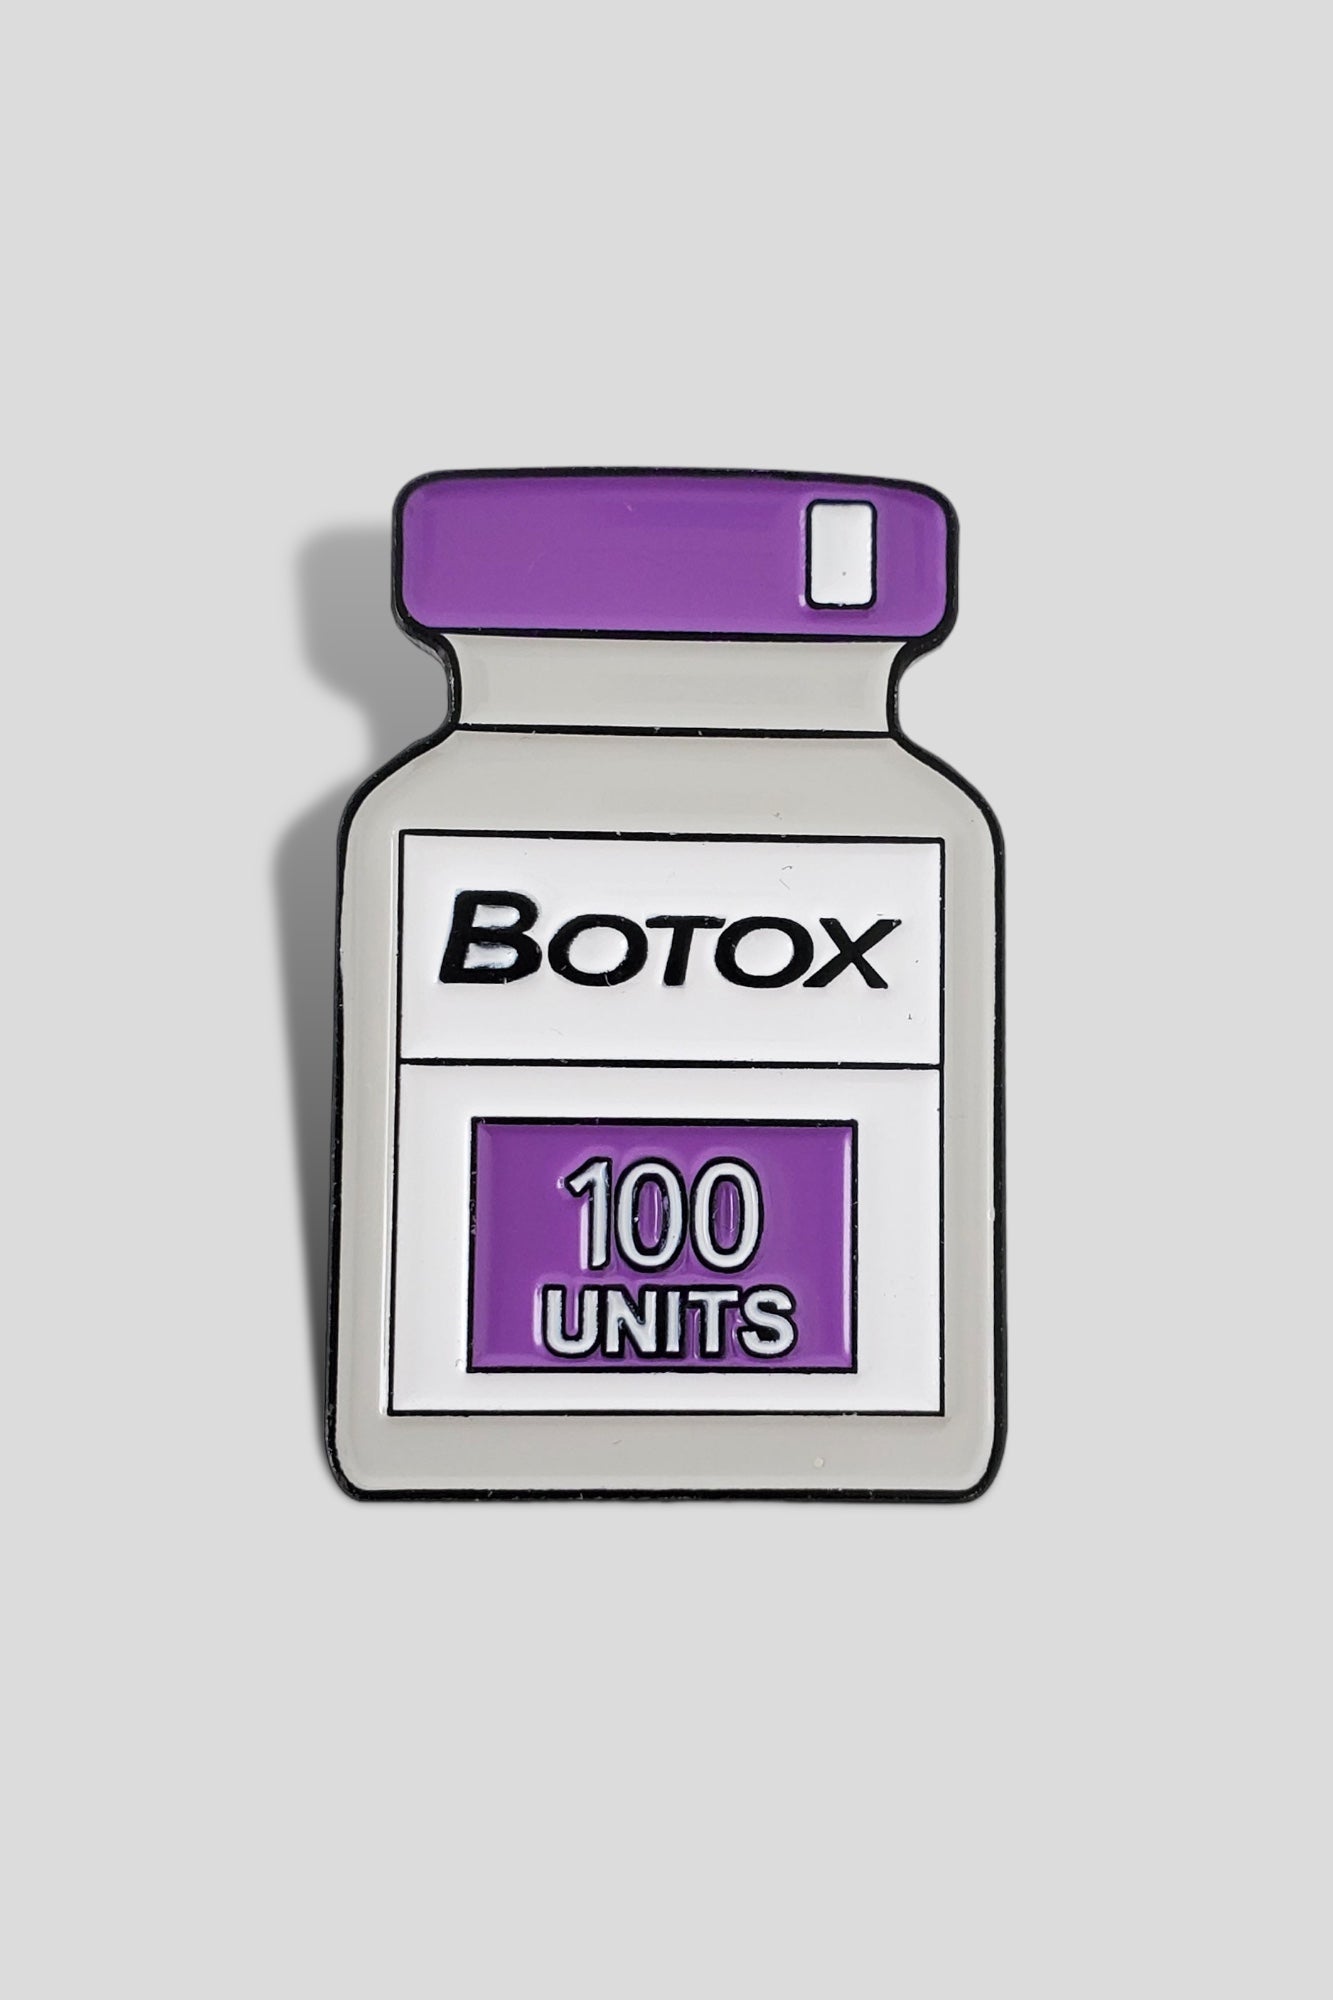 Botox Lapel Pin